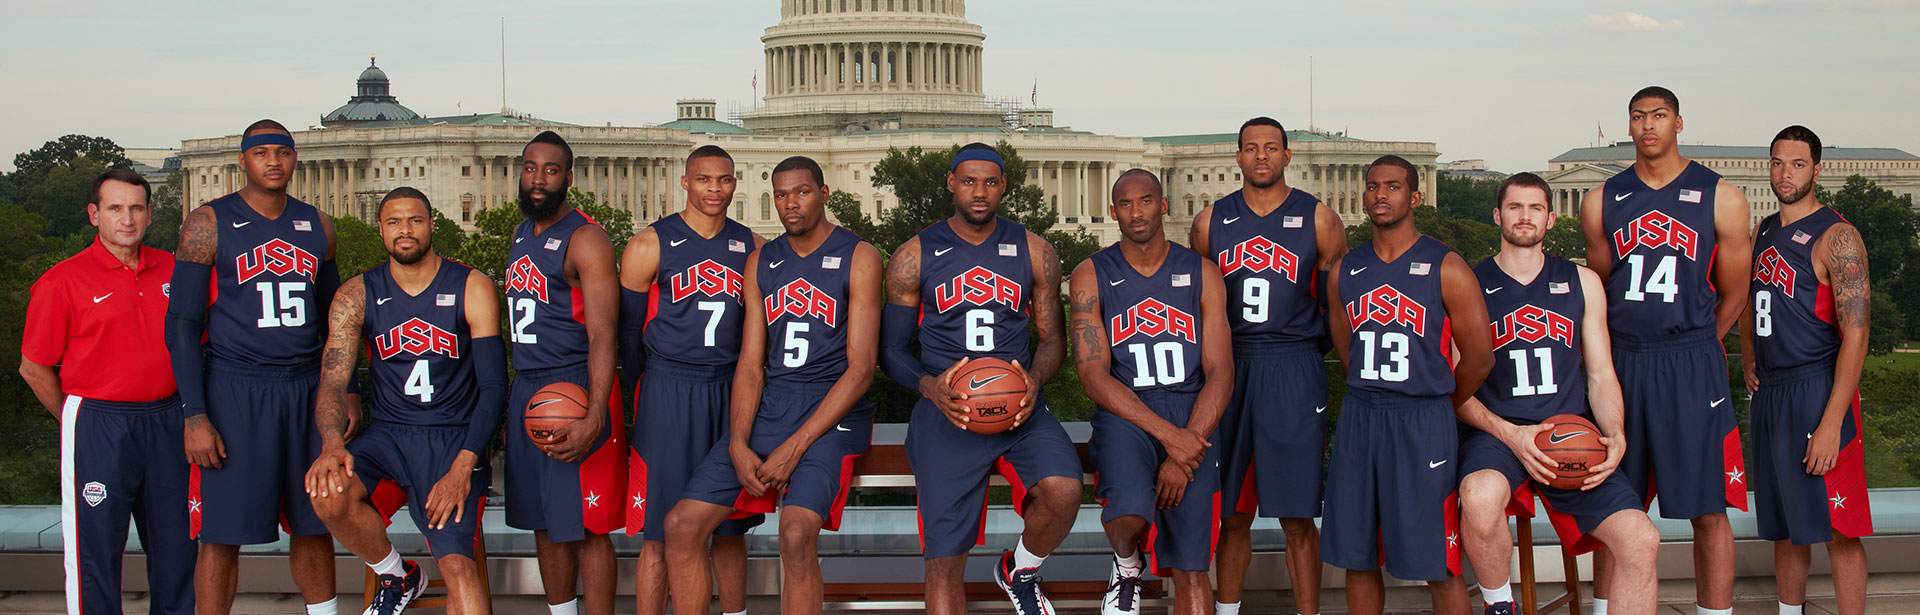 Usa basketball team